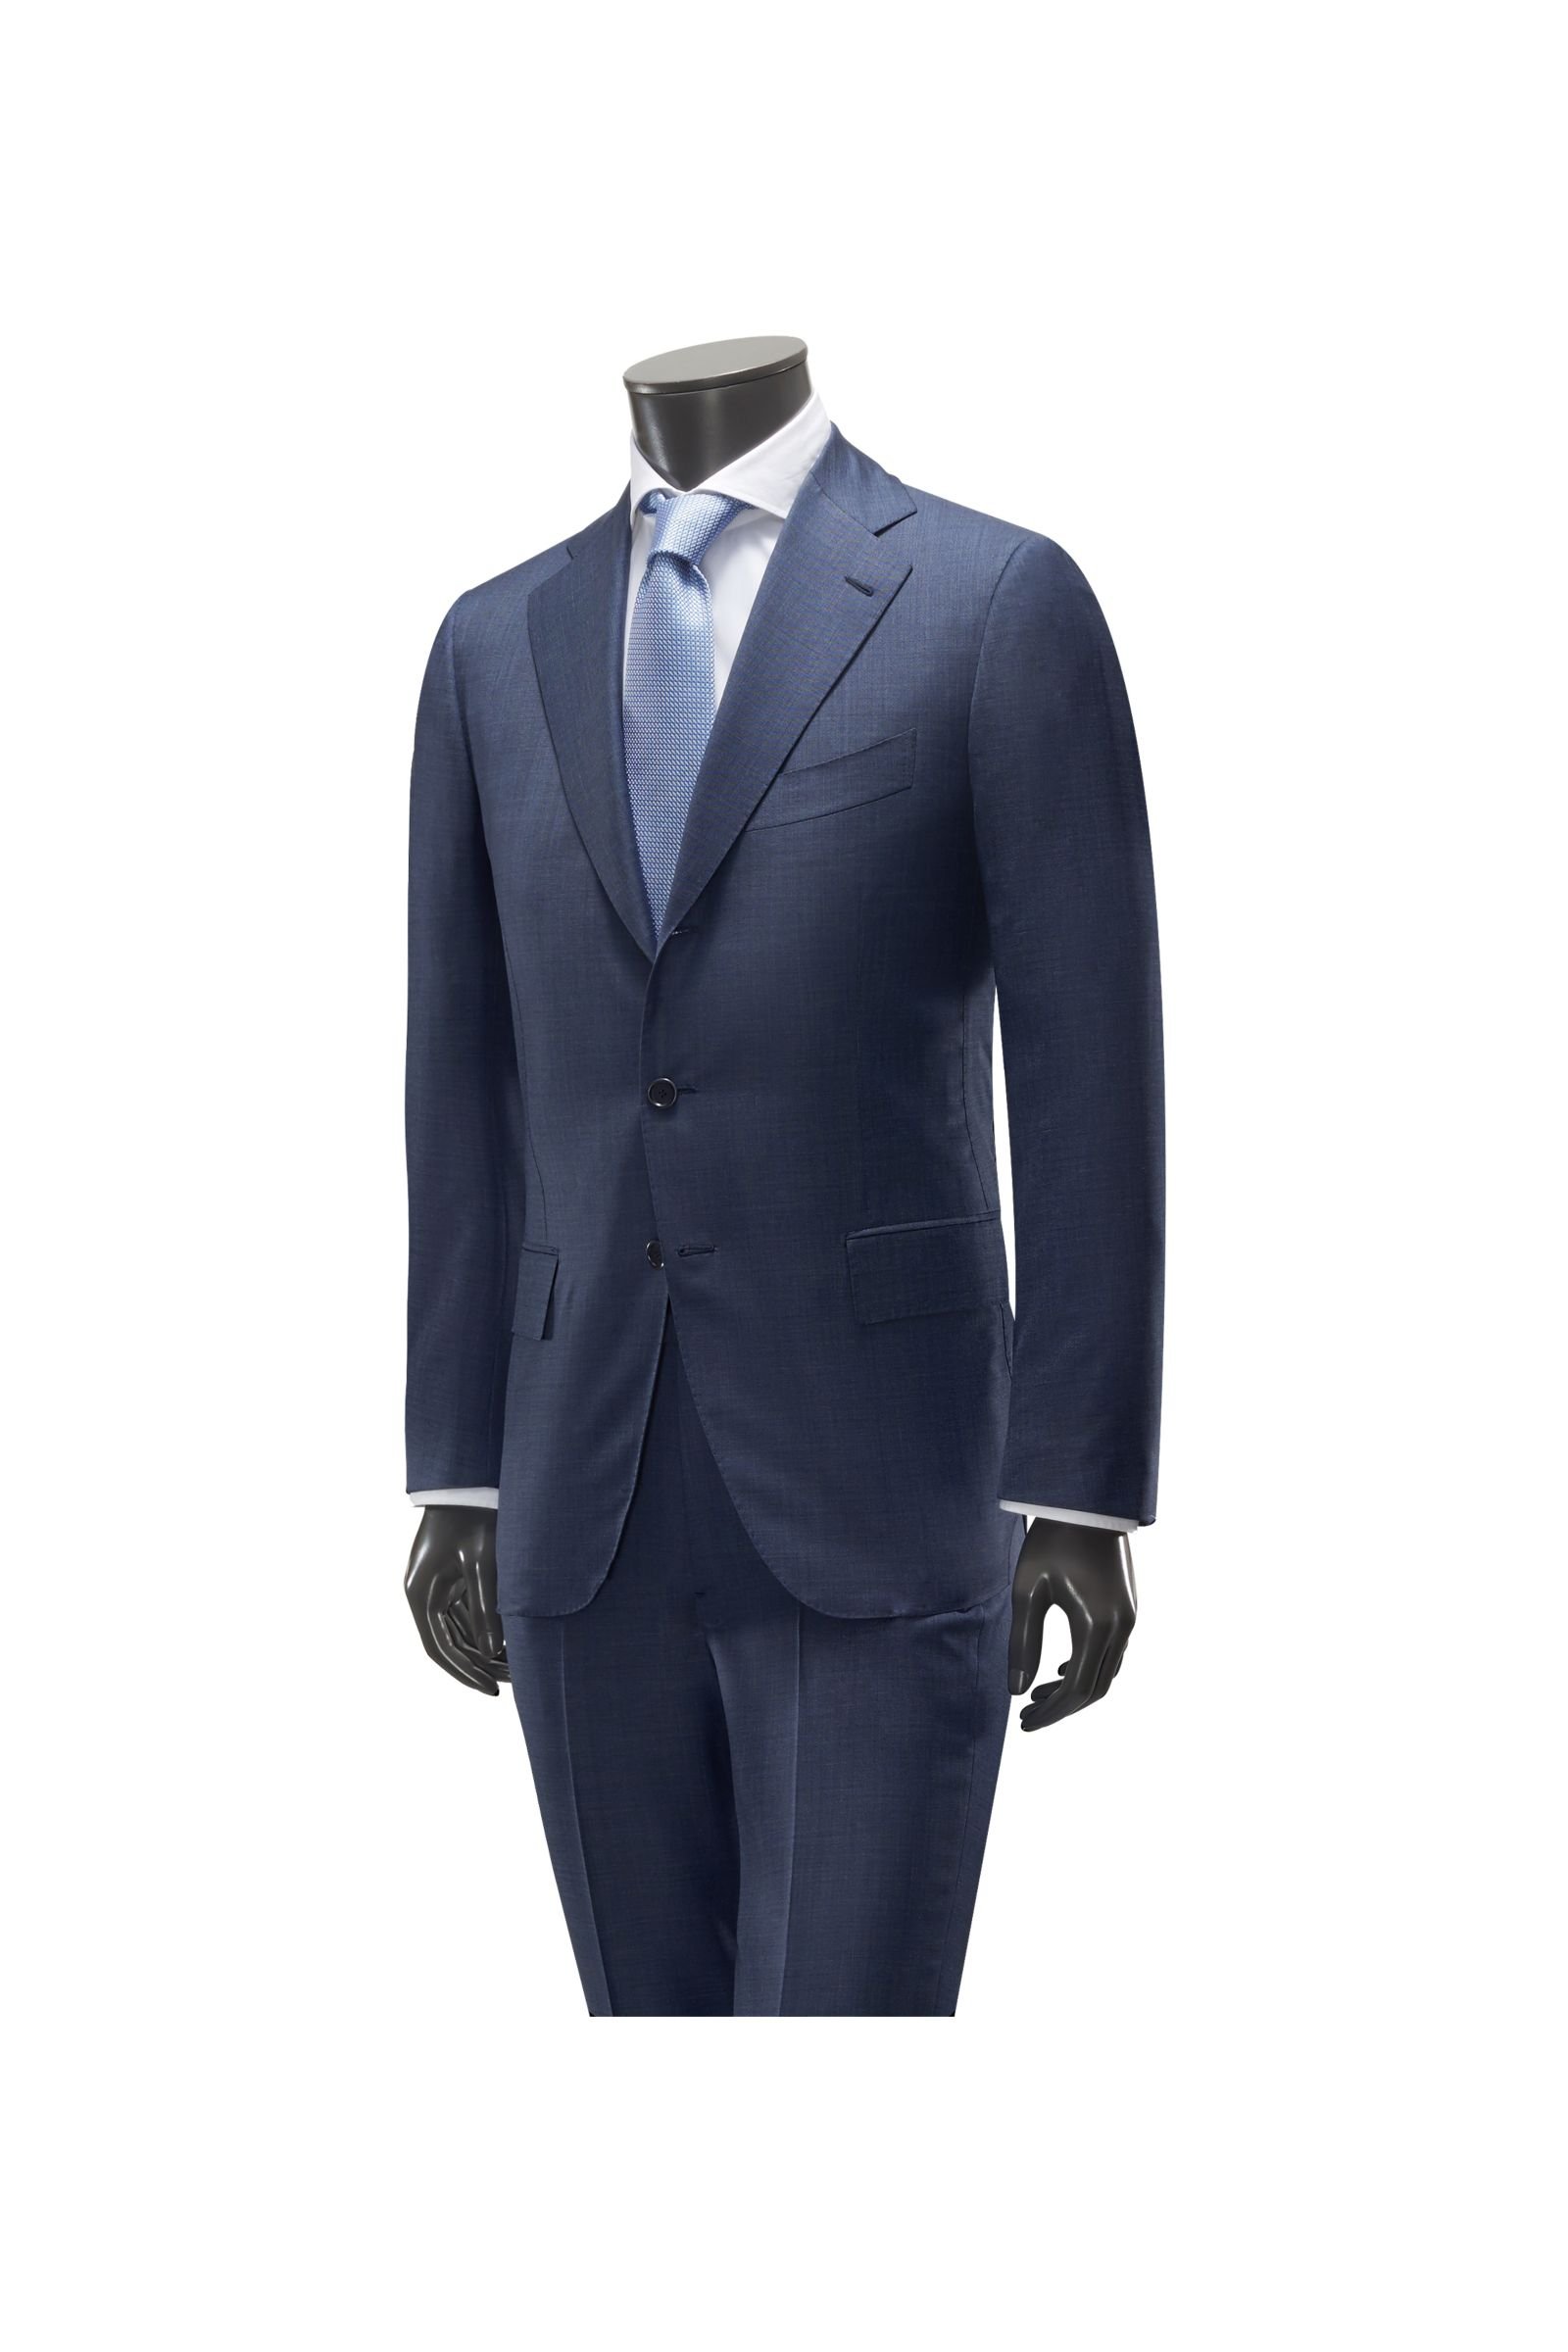 Suit grey-blue